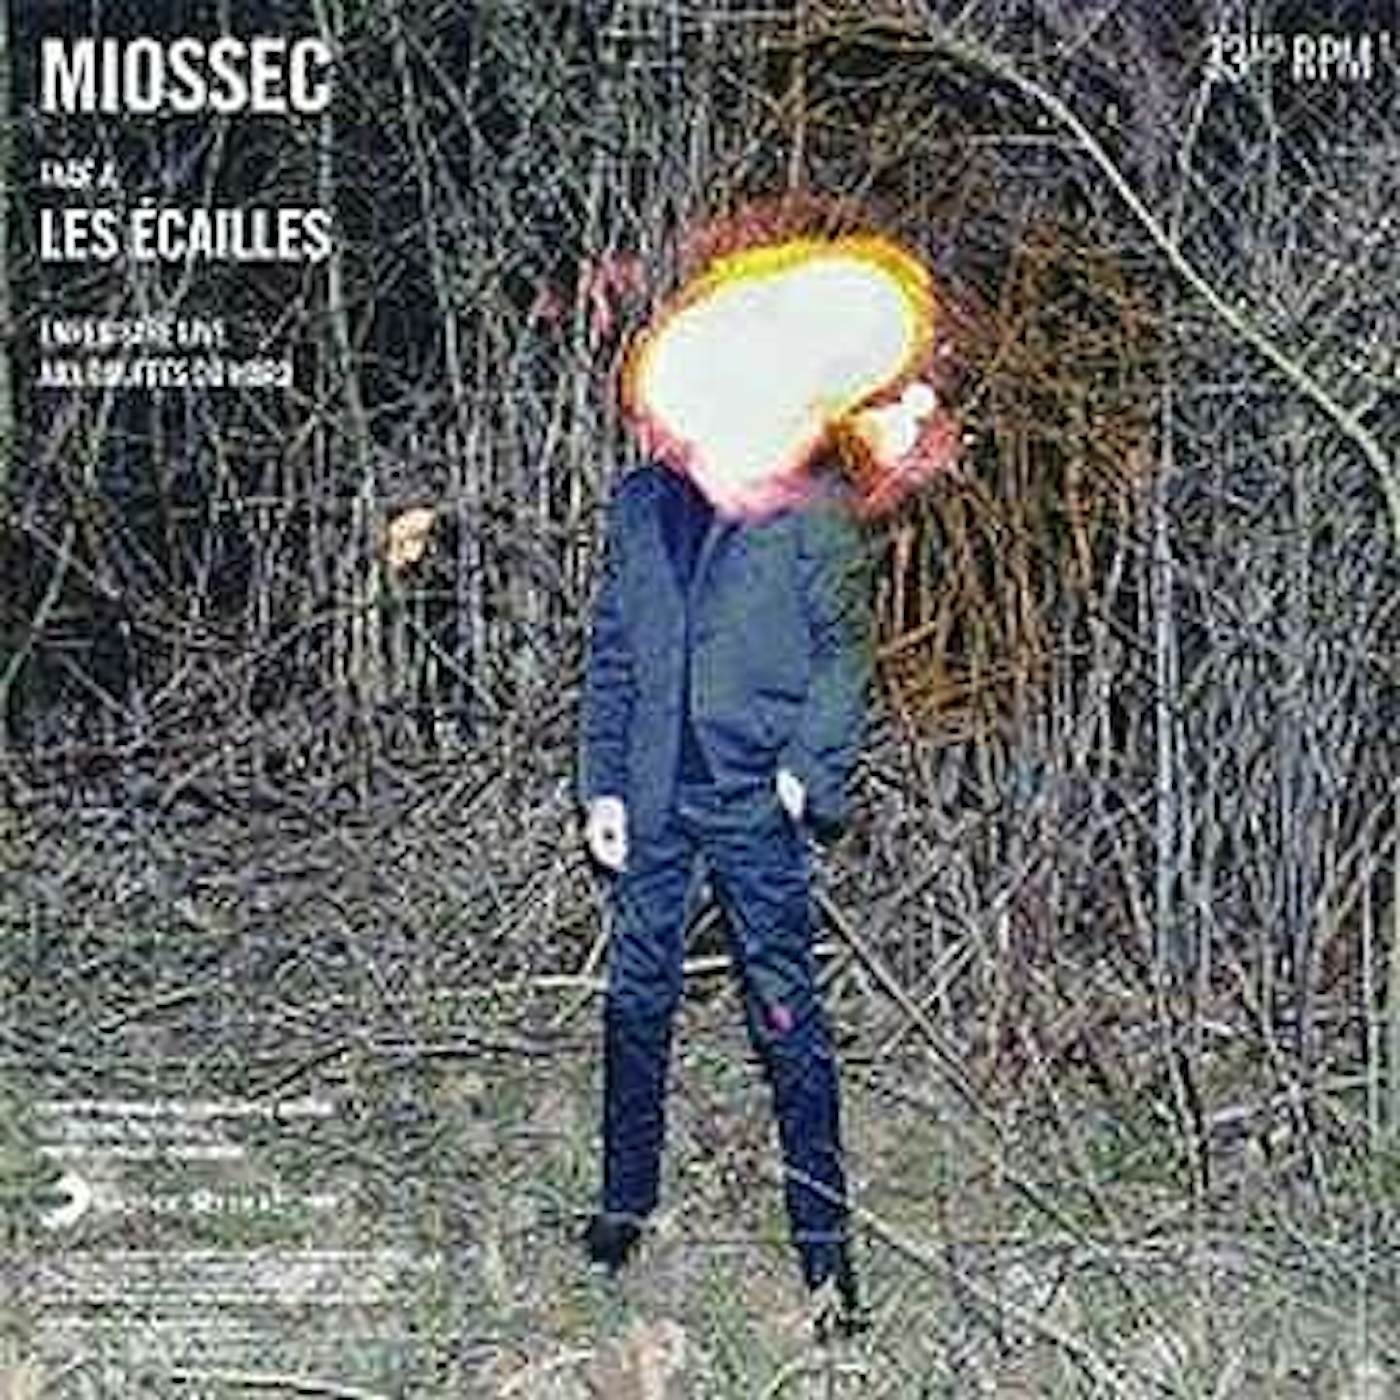 MIOSSEC AUX BOUFFES DU NORD Vinyl Record